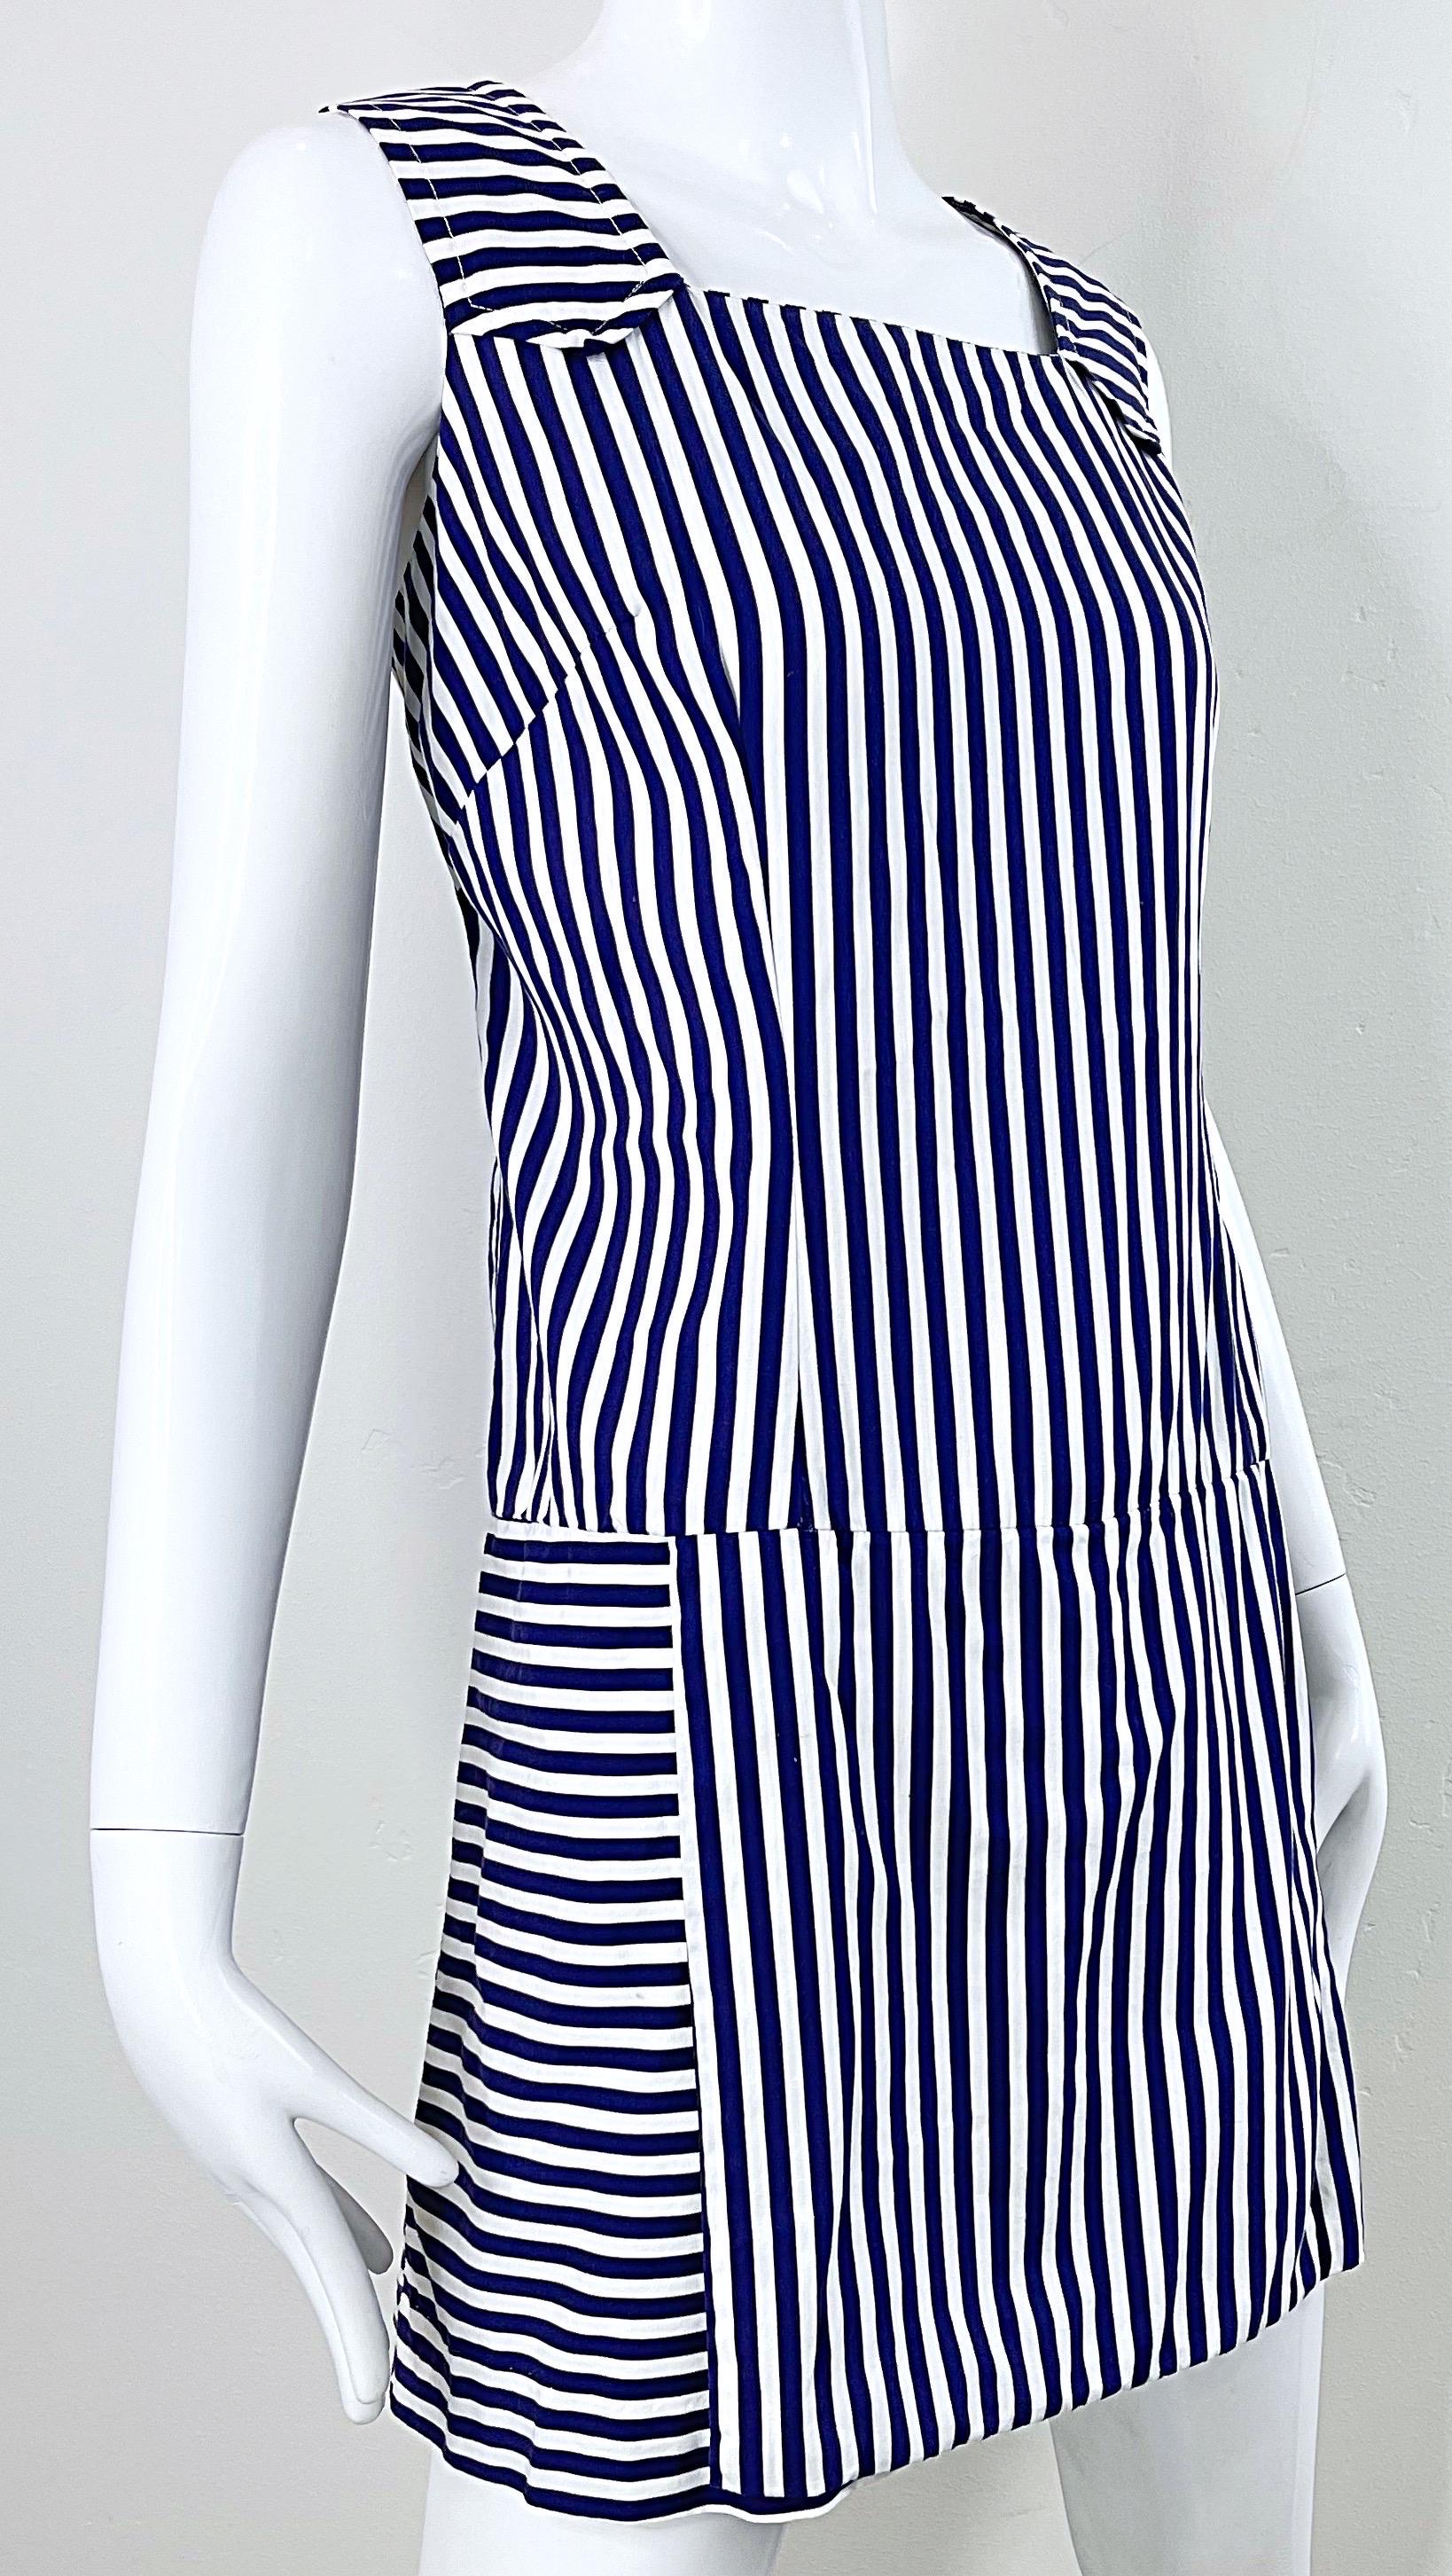 1960s Romper Large Size Navy + White Striped Cotton Vintage 60s Skort Dress For Sale 2